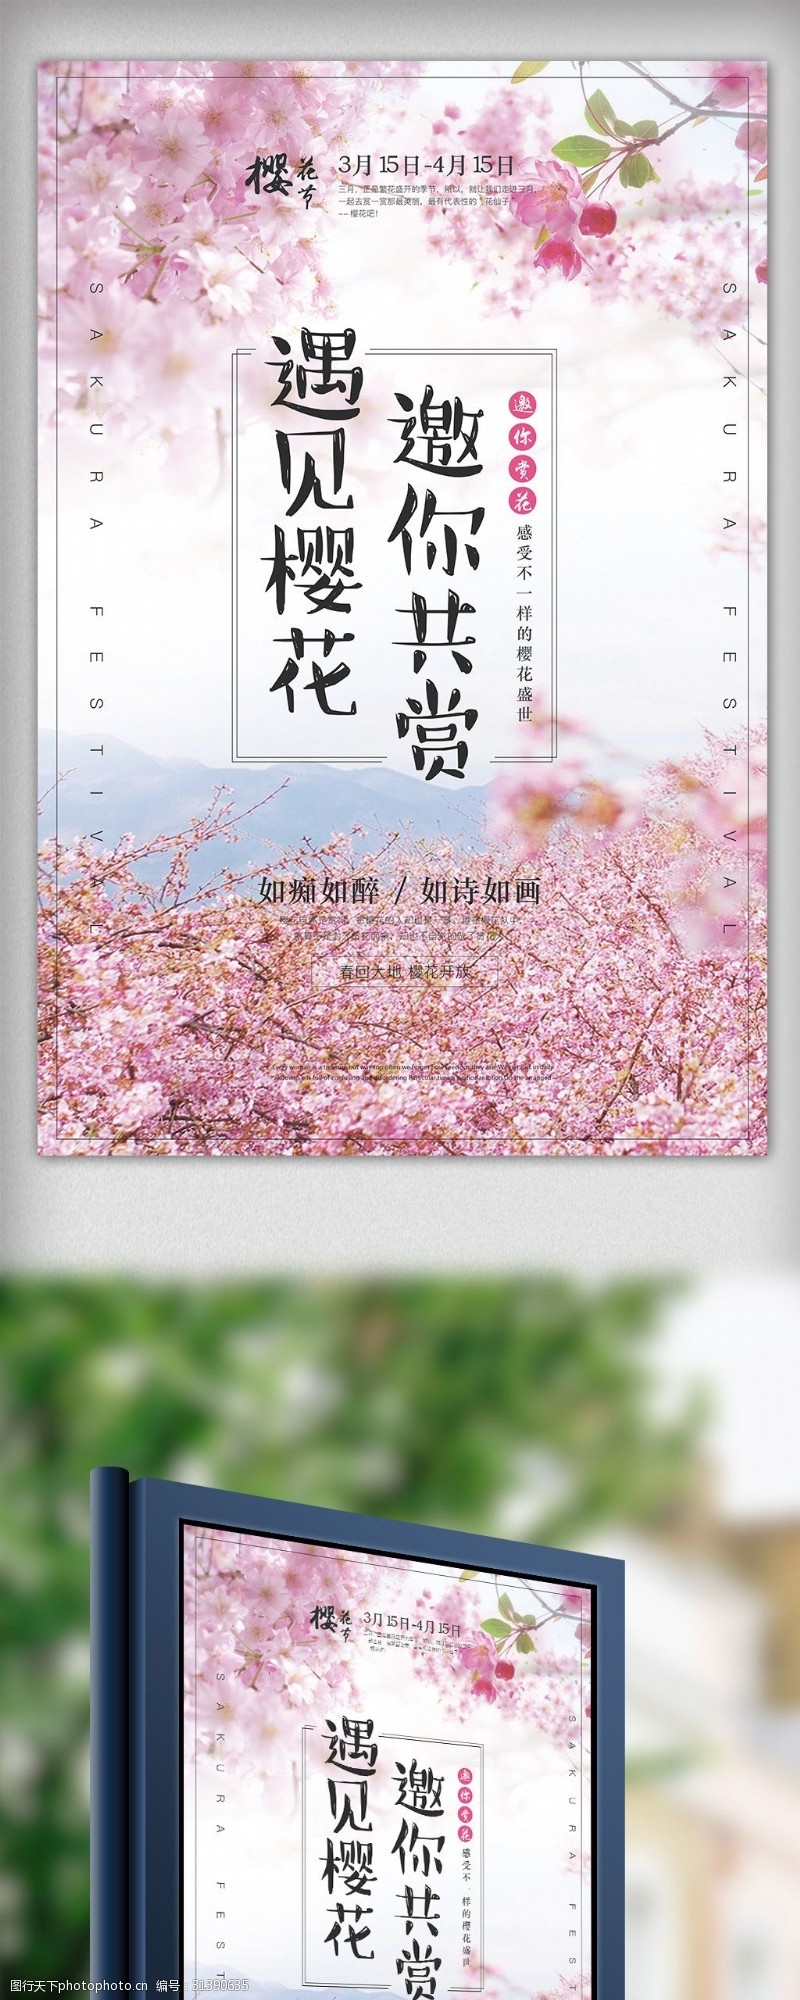 女神节唯美樱花节日本旅游海报设计